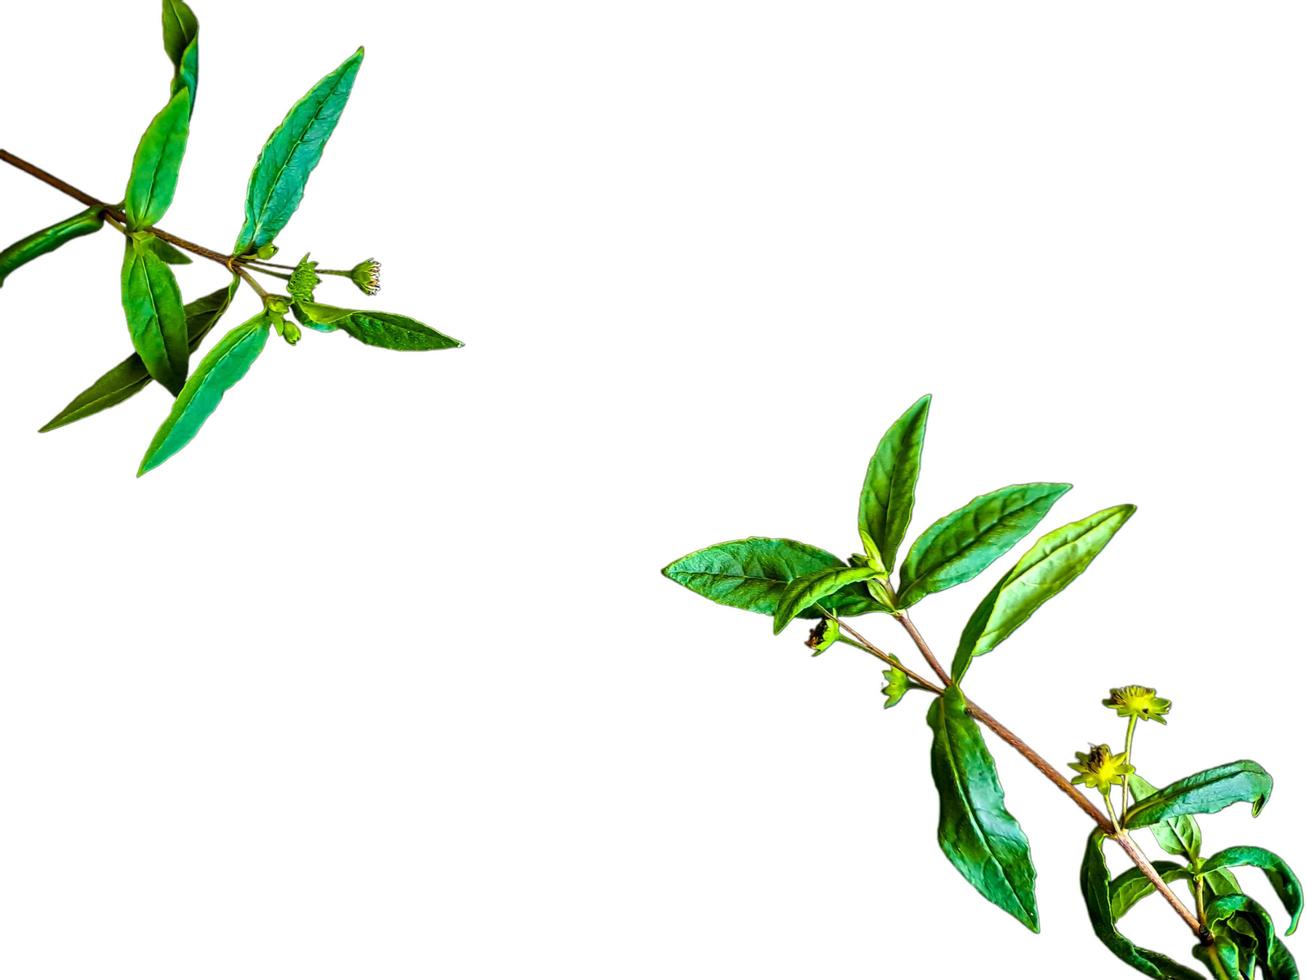 grevillea robusta vert, communément appelé chêne de soie du sud, chêne de soie ou chêne de soie, chêne argenté ou chêne argenté australien, est une plante à fleurs de la famille des protéacées, fond blanc isolé photo